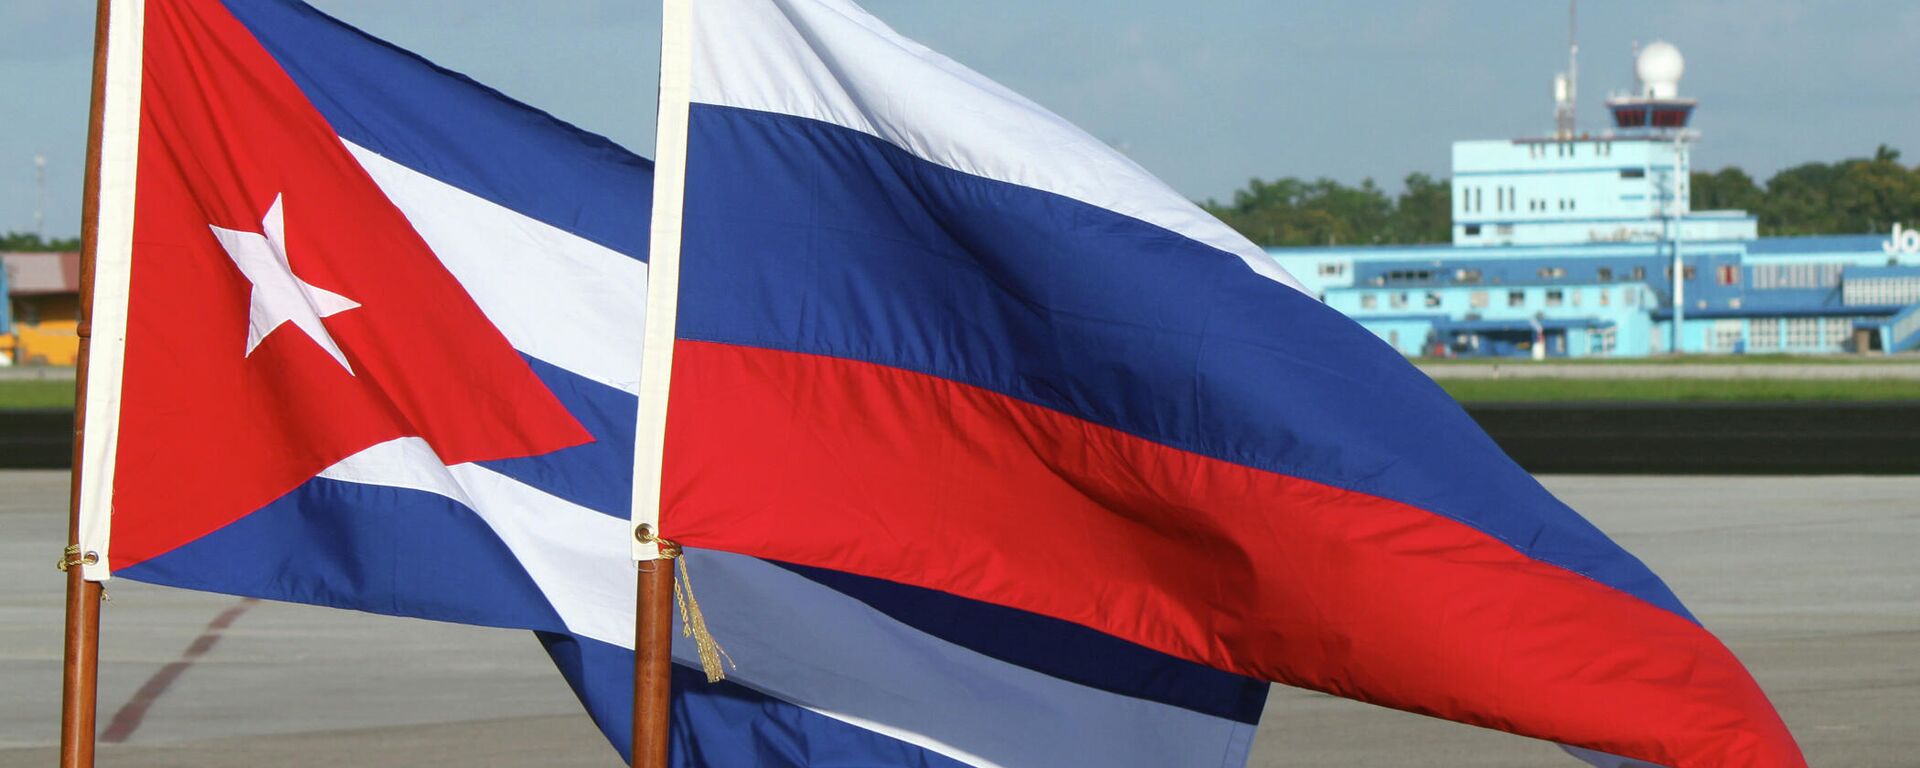 Banderas de Rusia y Cuba - Sputnik Mundo, 1920, 25.05.2022